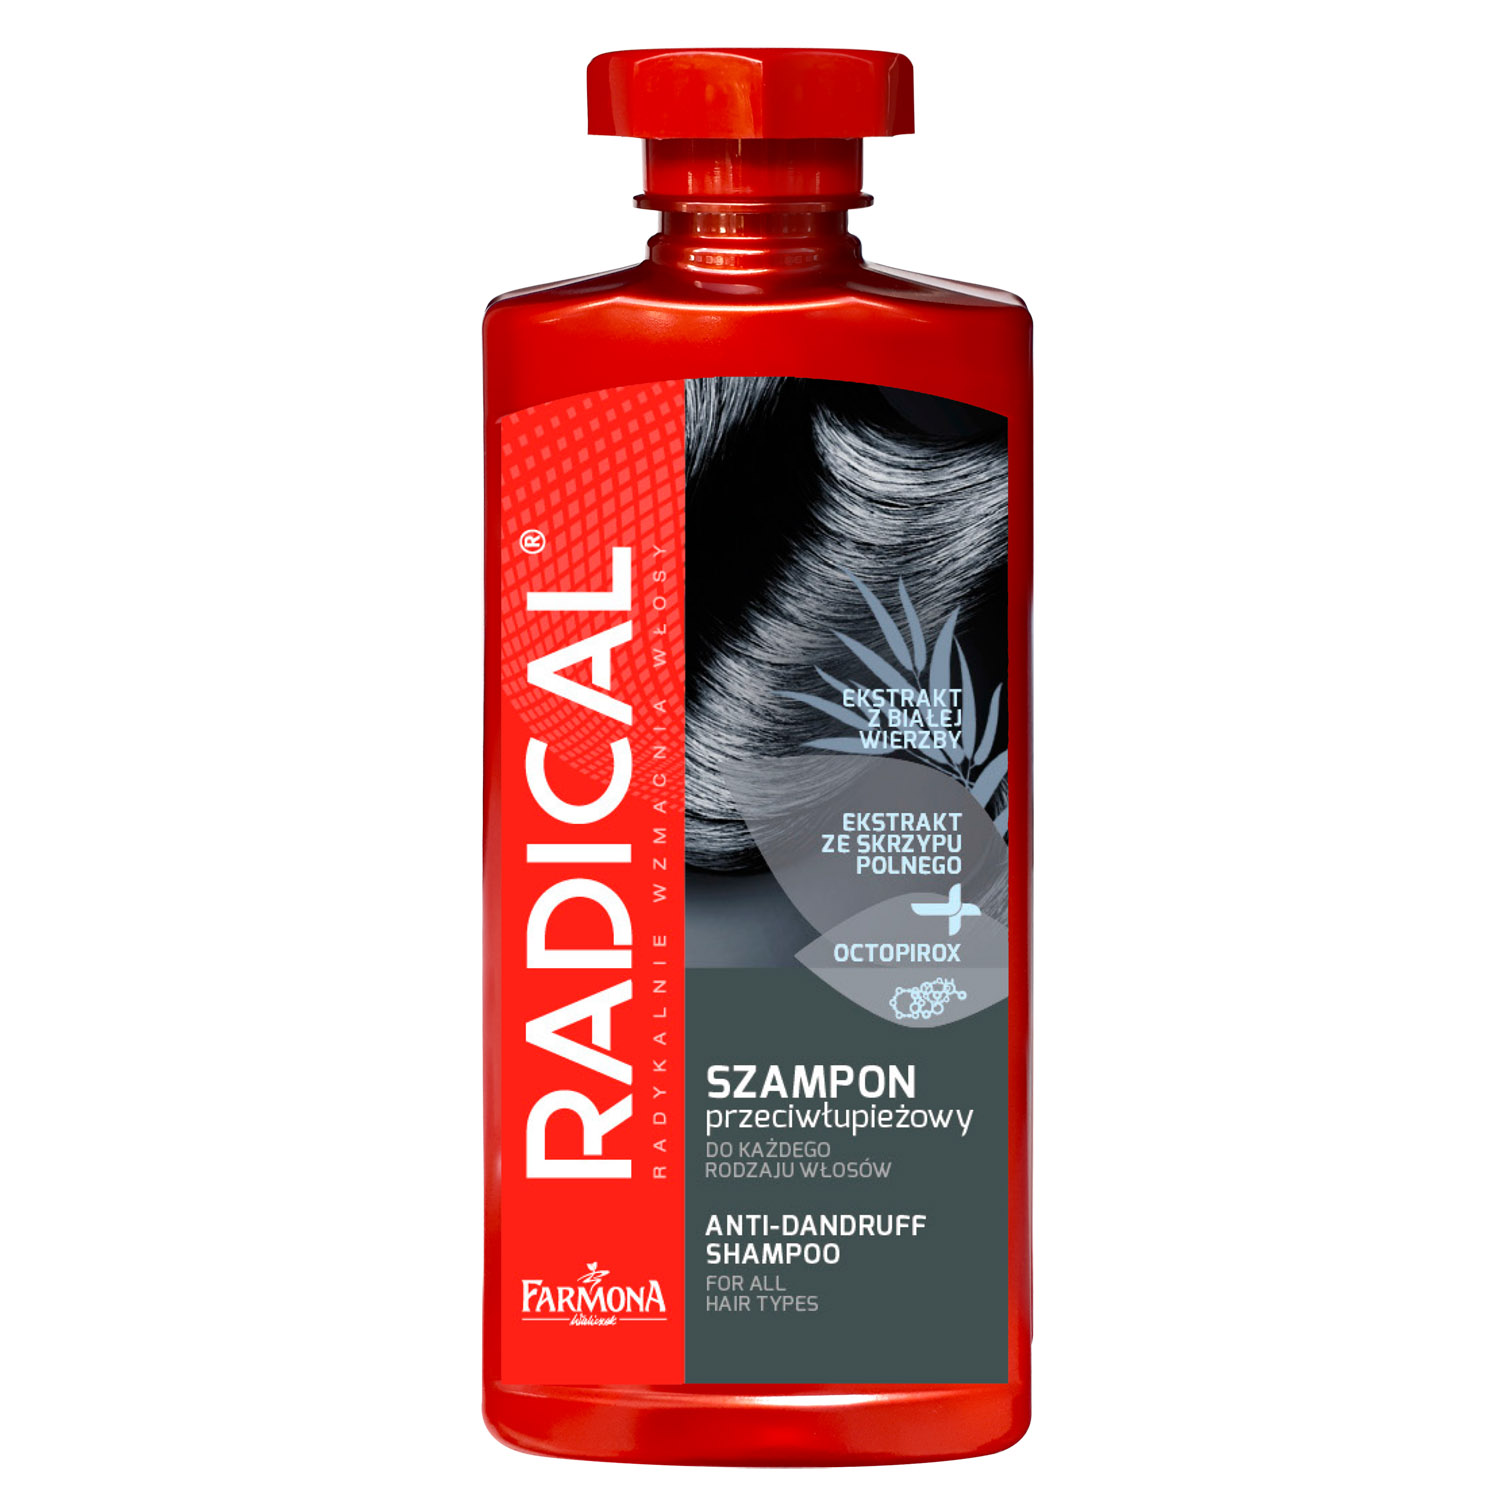 Шампунь Farmona Radical від лупи для всіх типів волосся, 400 мл - фото 1